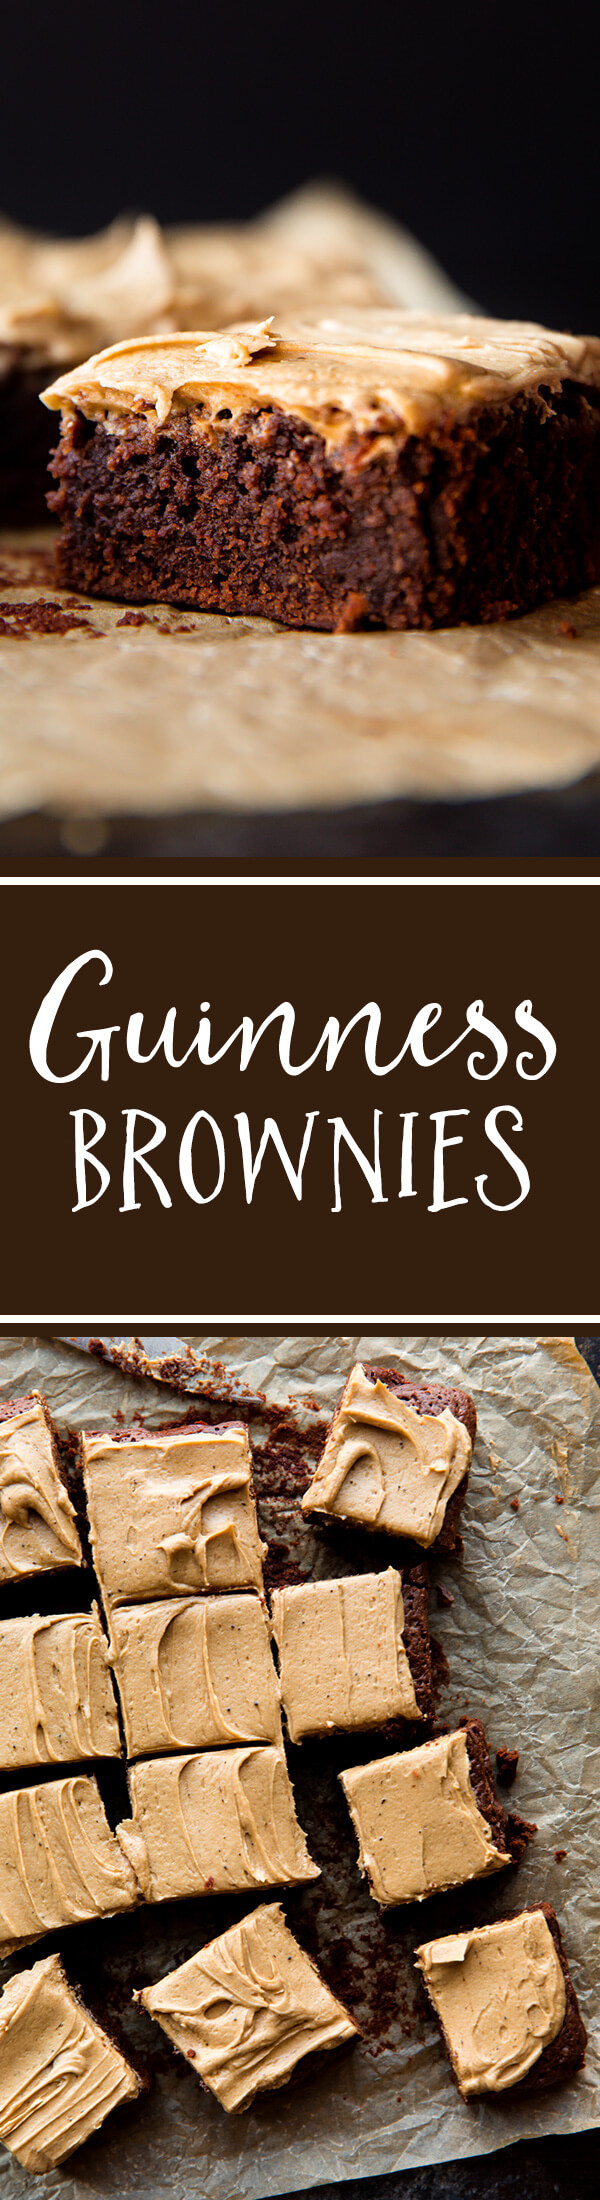 Ces brownies Guinness sont fabriqués à partir de Guinness Stout réduit. Ils sont moelleux, riches et garnis de poudre d'espresso et de glaçage infusé à la Guinness! Recette sur sallysbakingaddiction.com